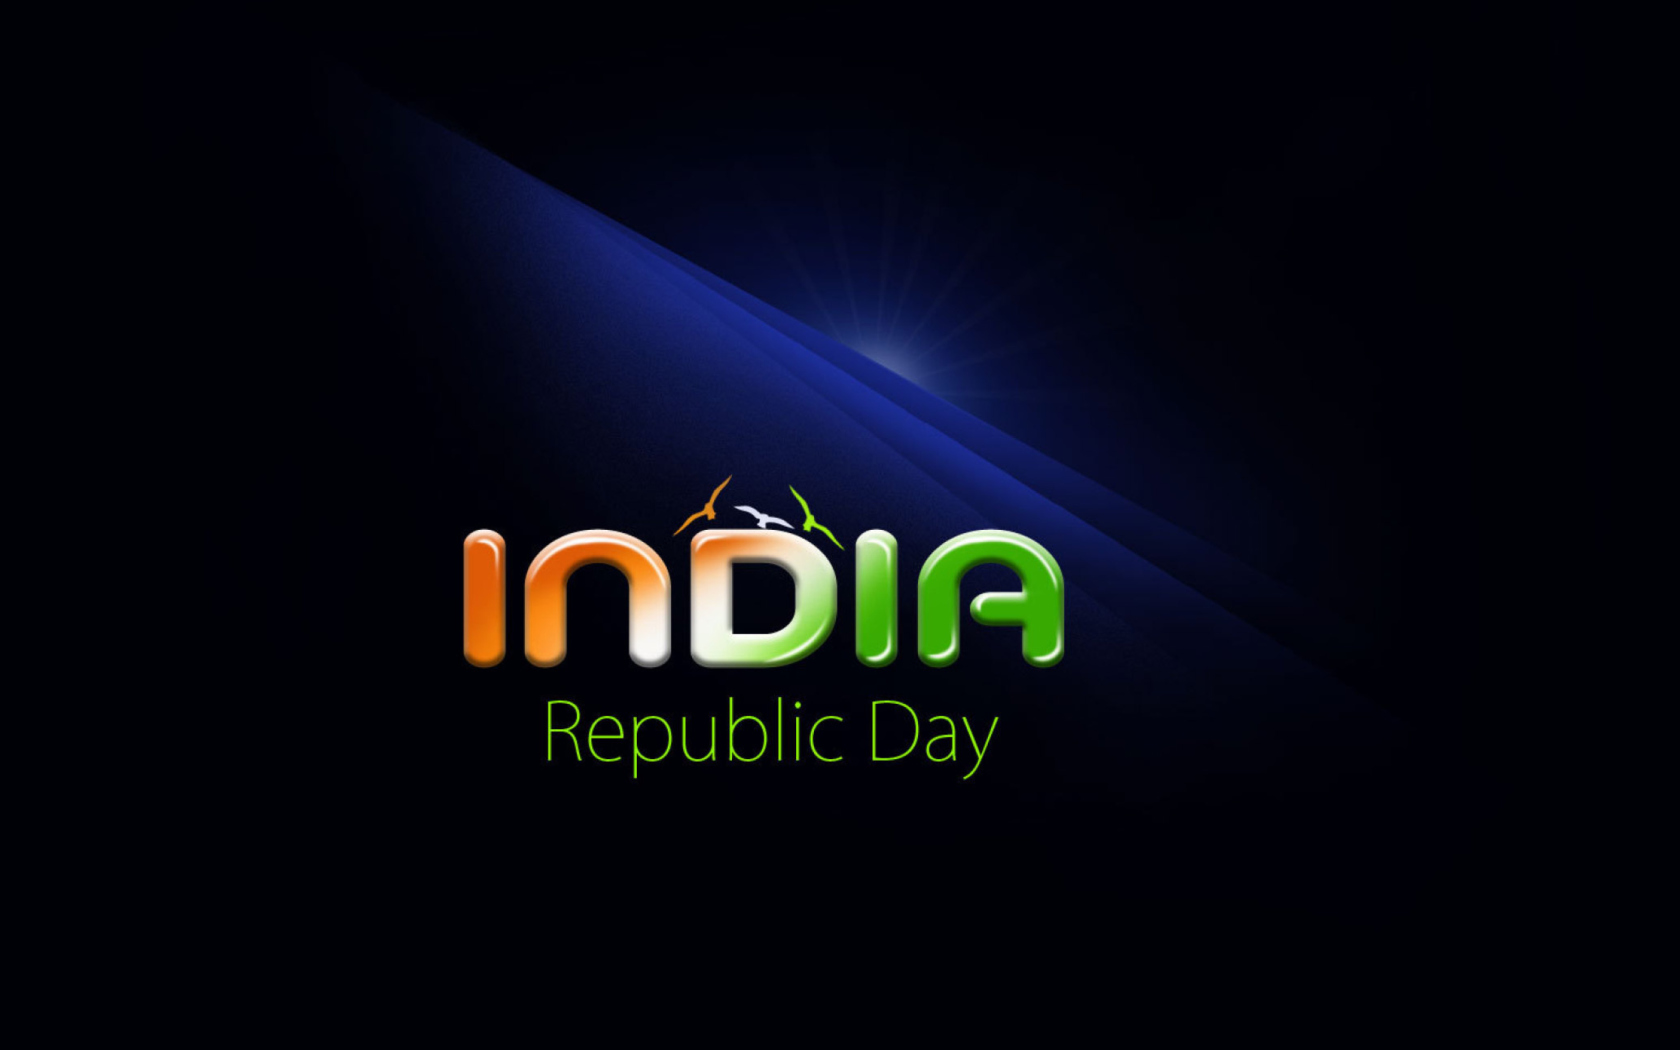 Sfondi Republic Day India 26 January 1680x1050